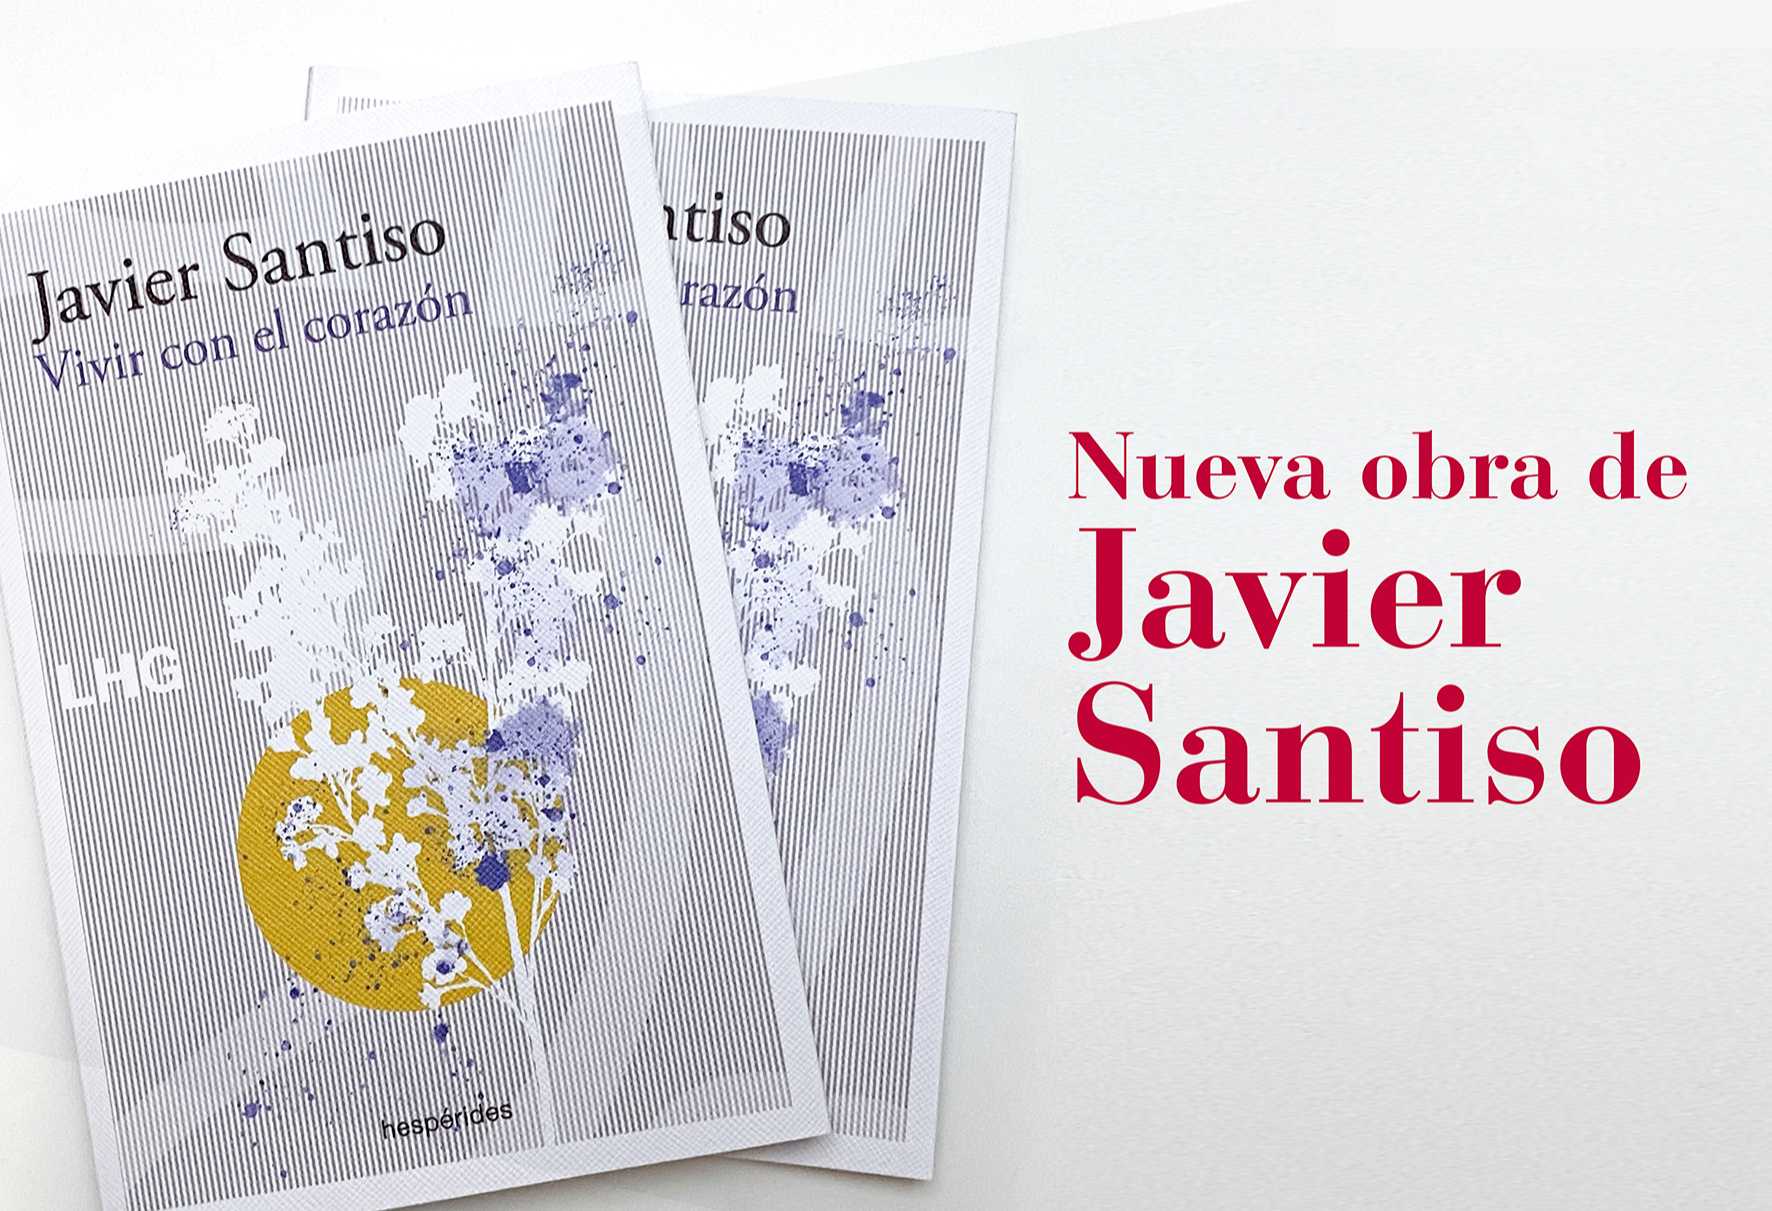 Vivir con el corazon de Javier Santiso